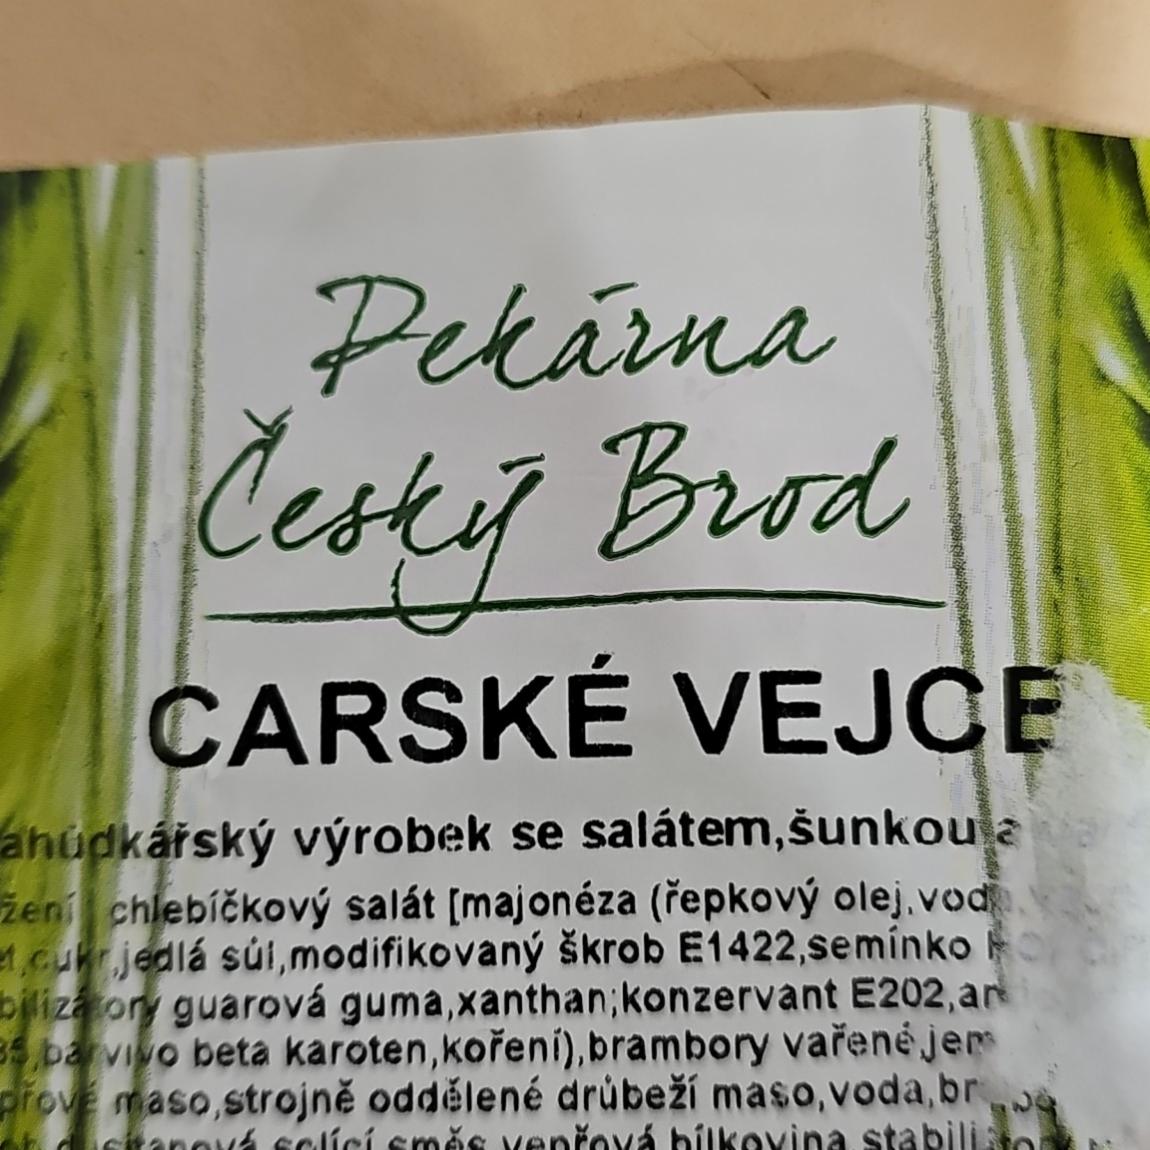 Fotografie - Carské vejce Pekárna Český Brod